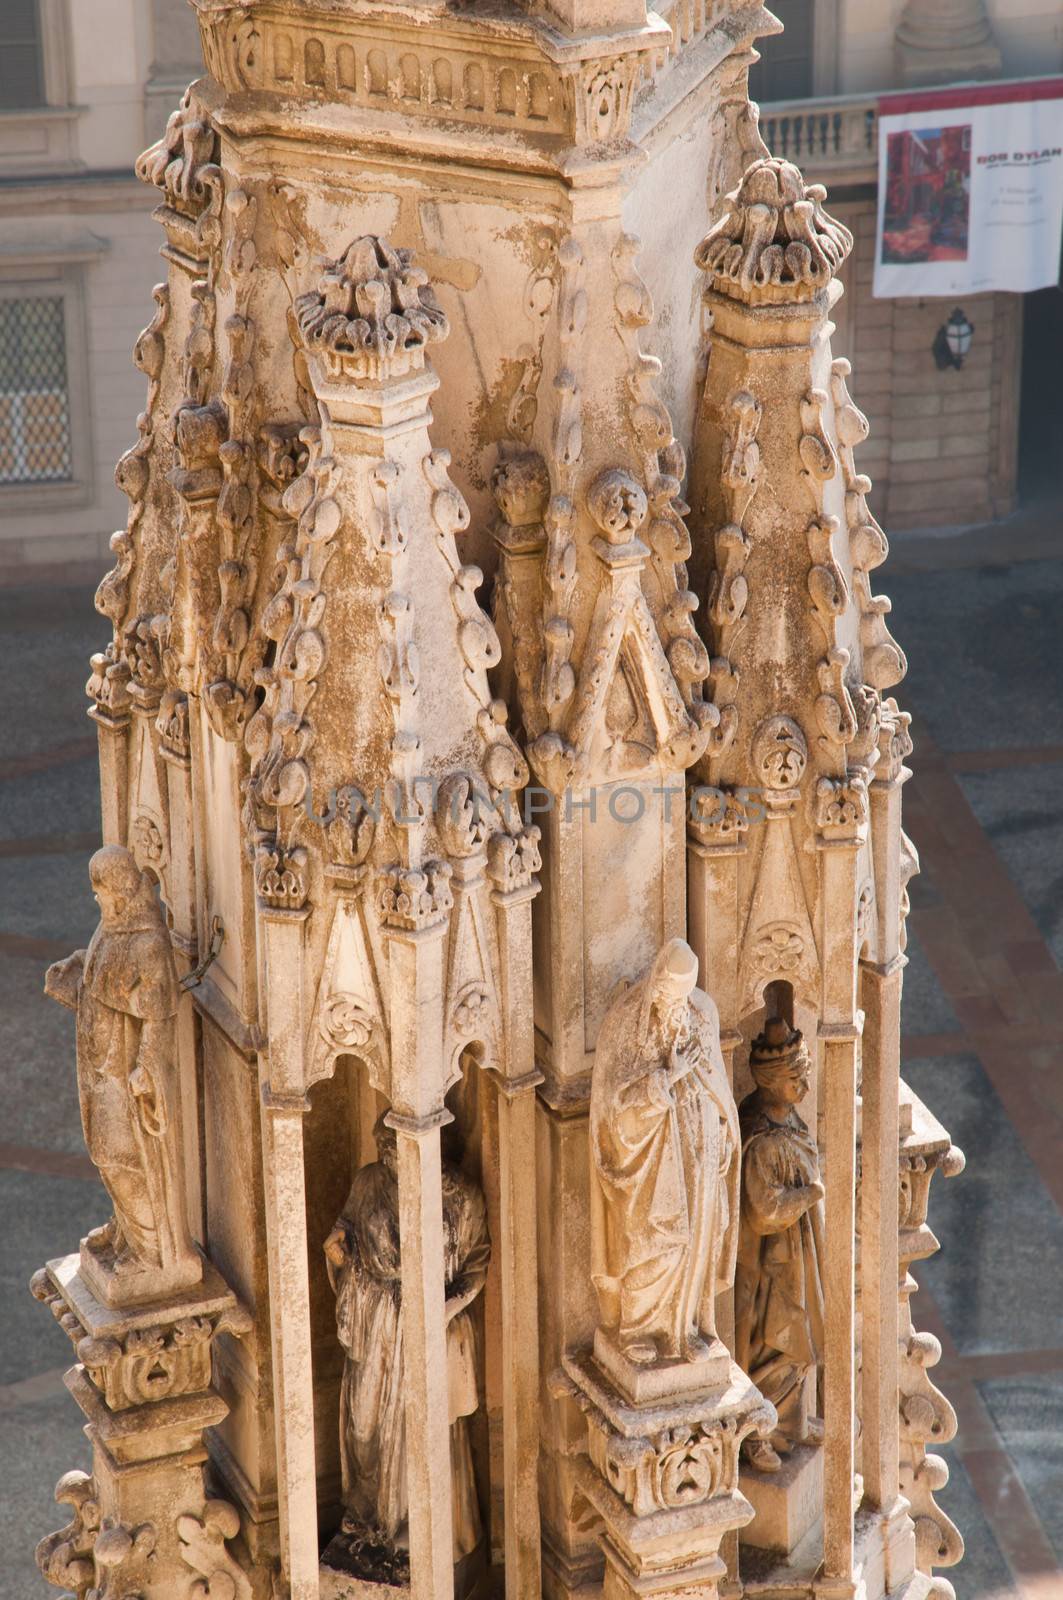 Duomo of Milan by sognolucido